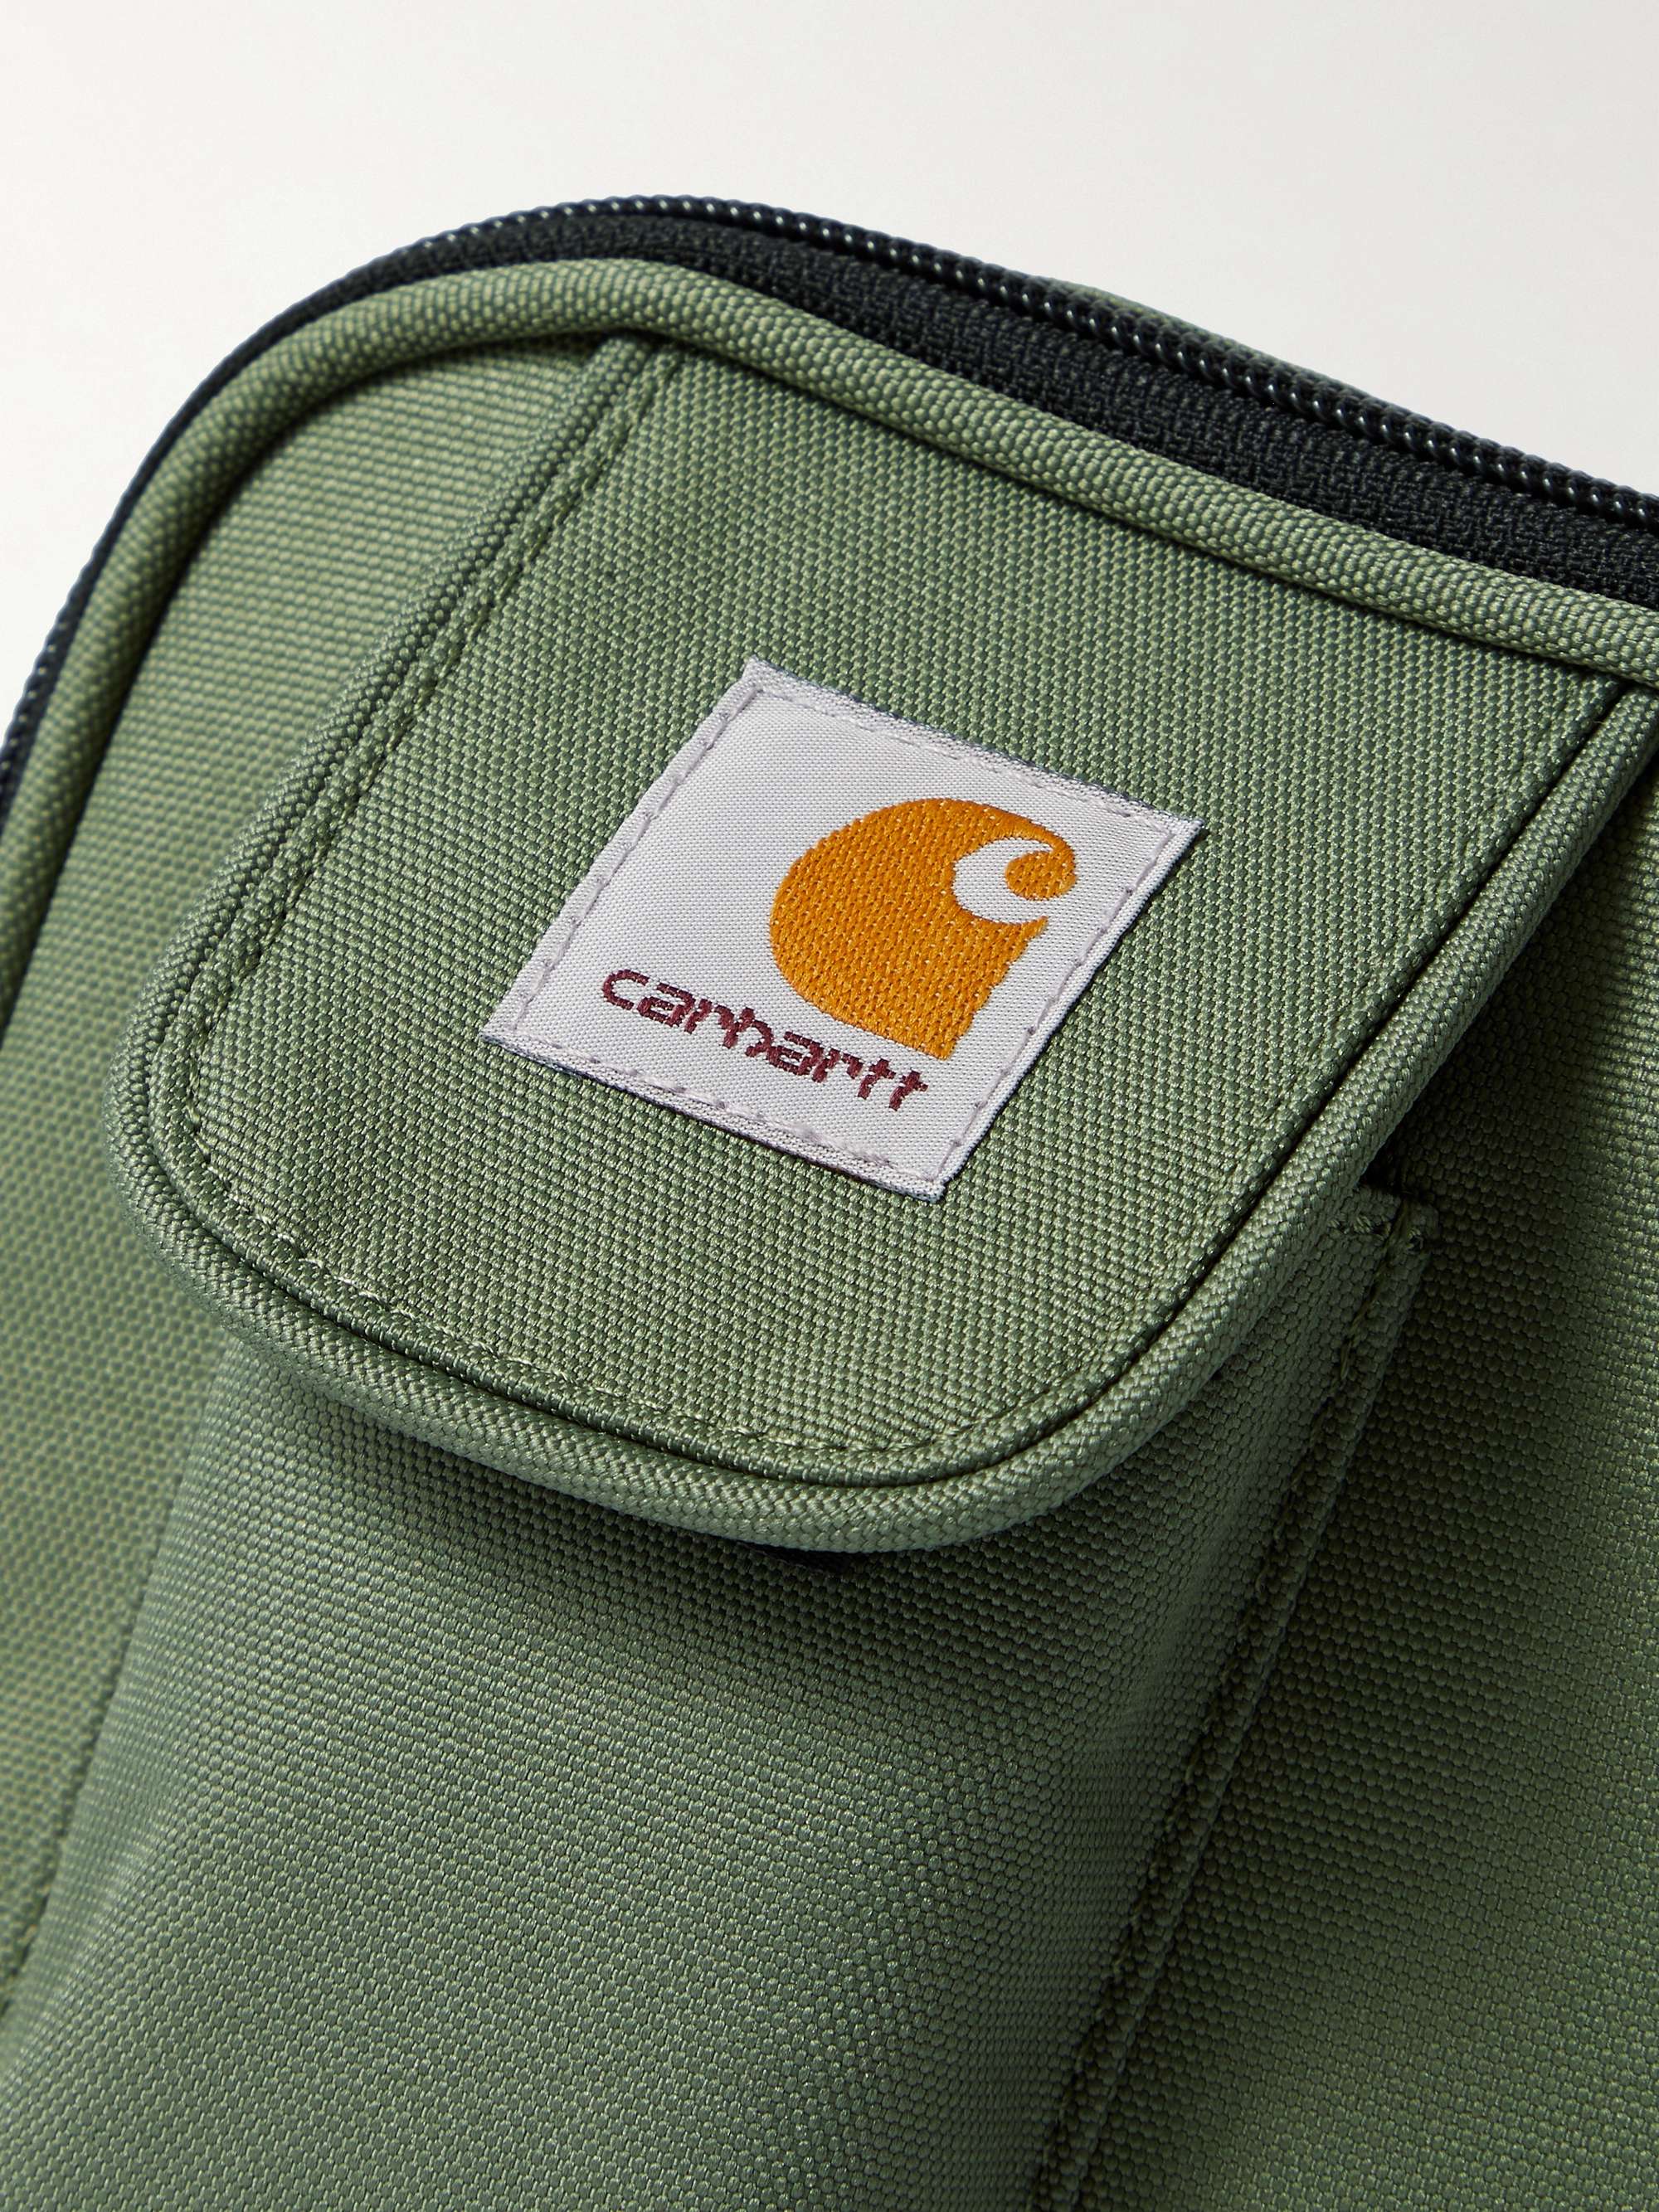 carhartt messenger bag